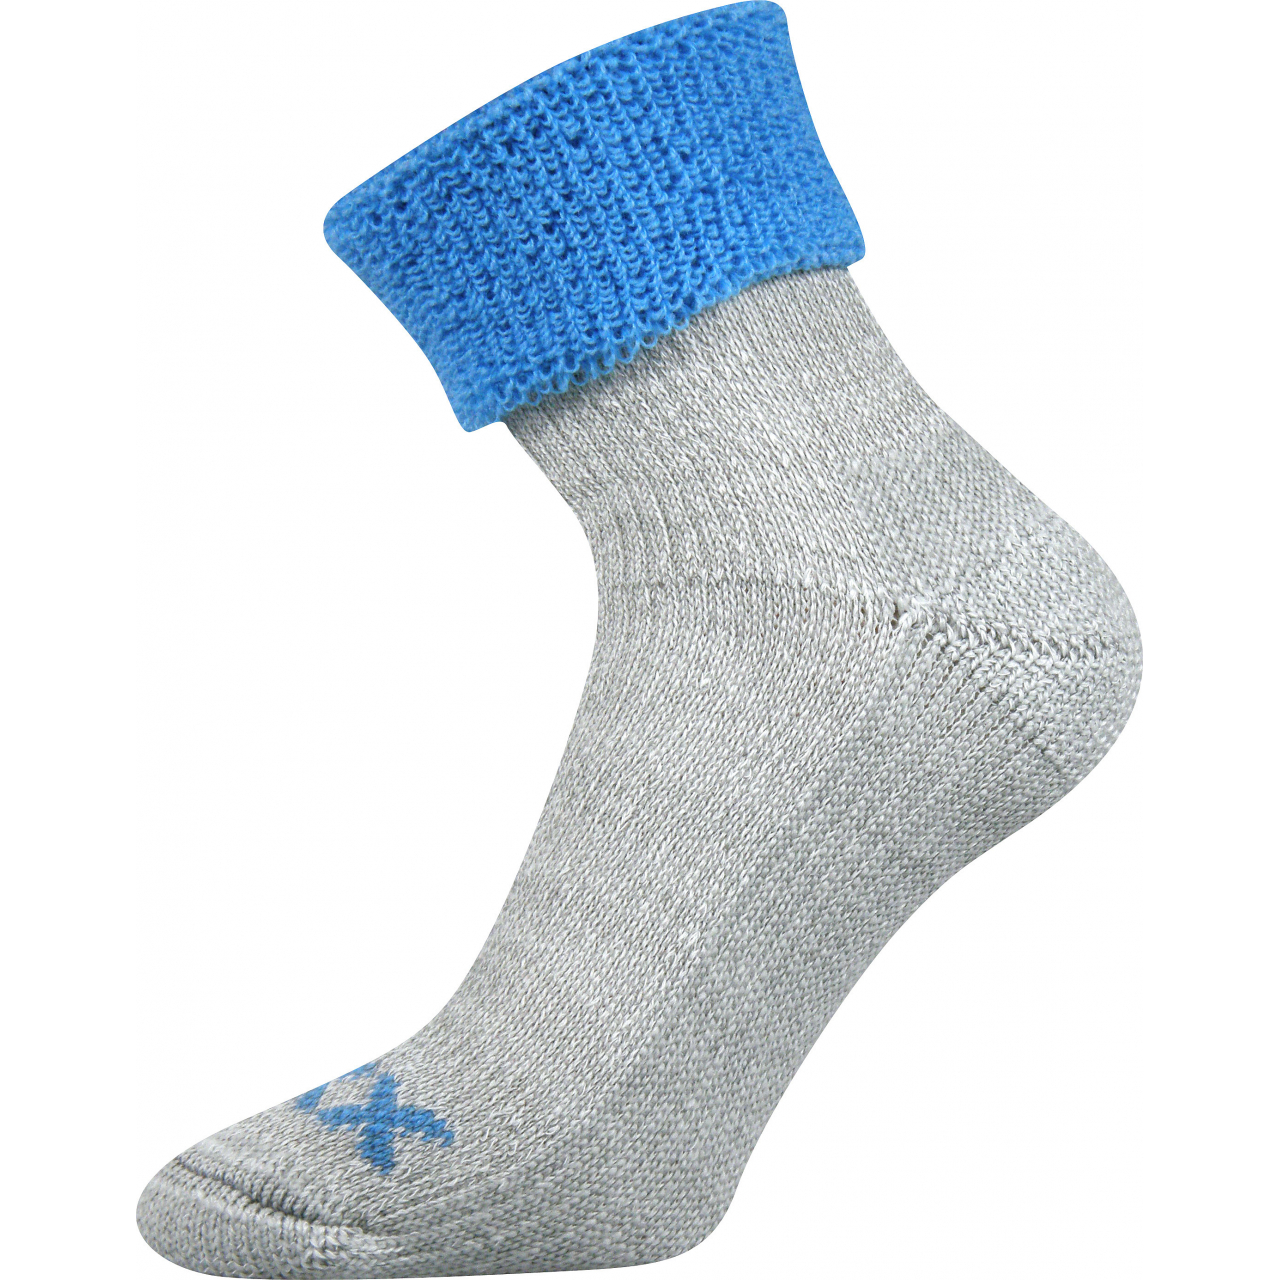 Ponožky dámské thermo Voxx Quanta - šedé-modré, 35-38